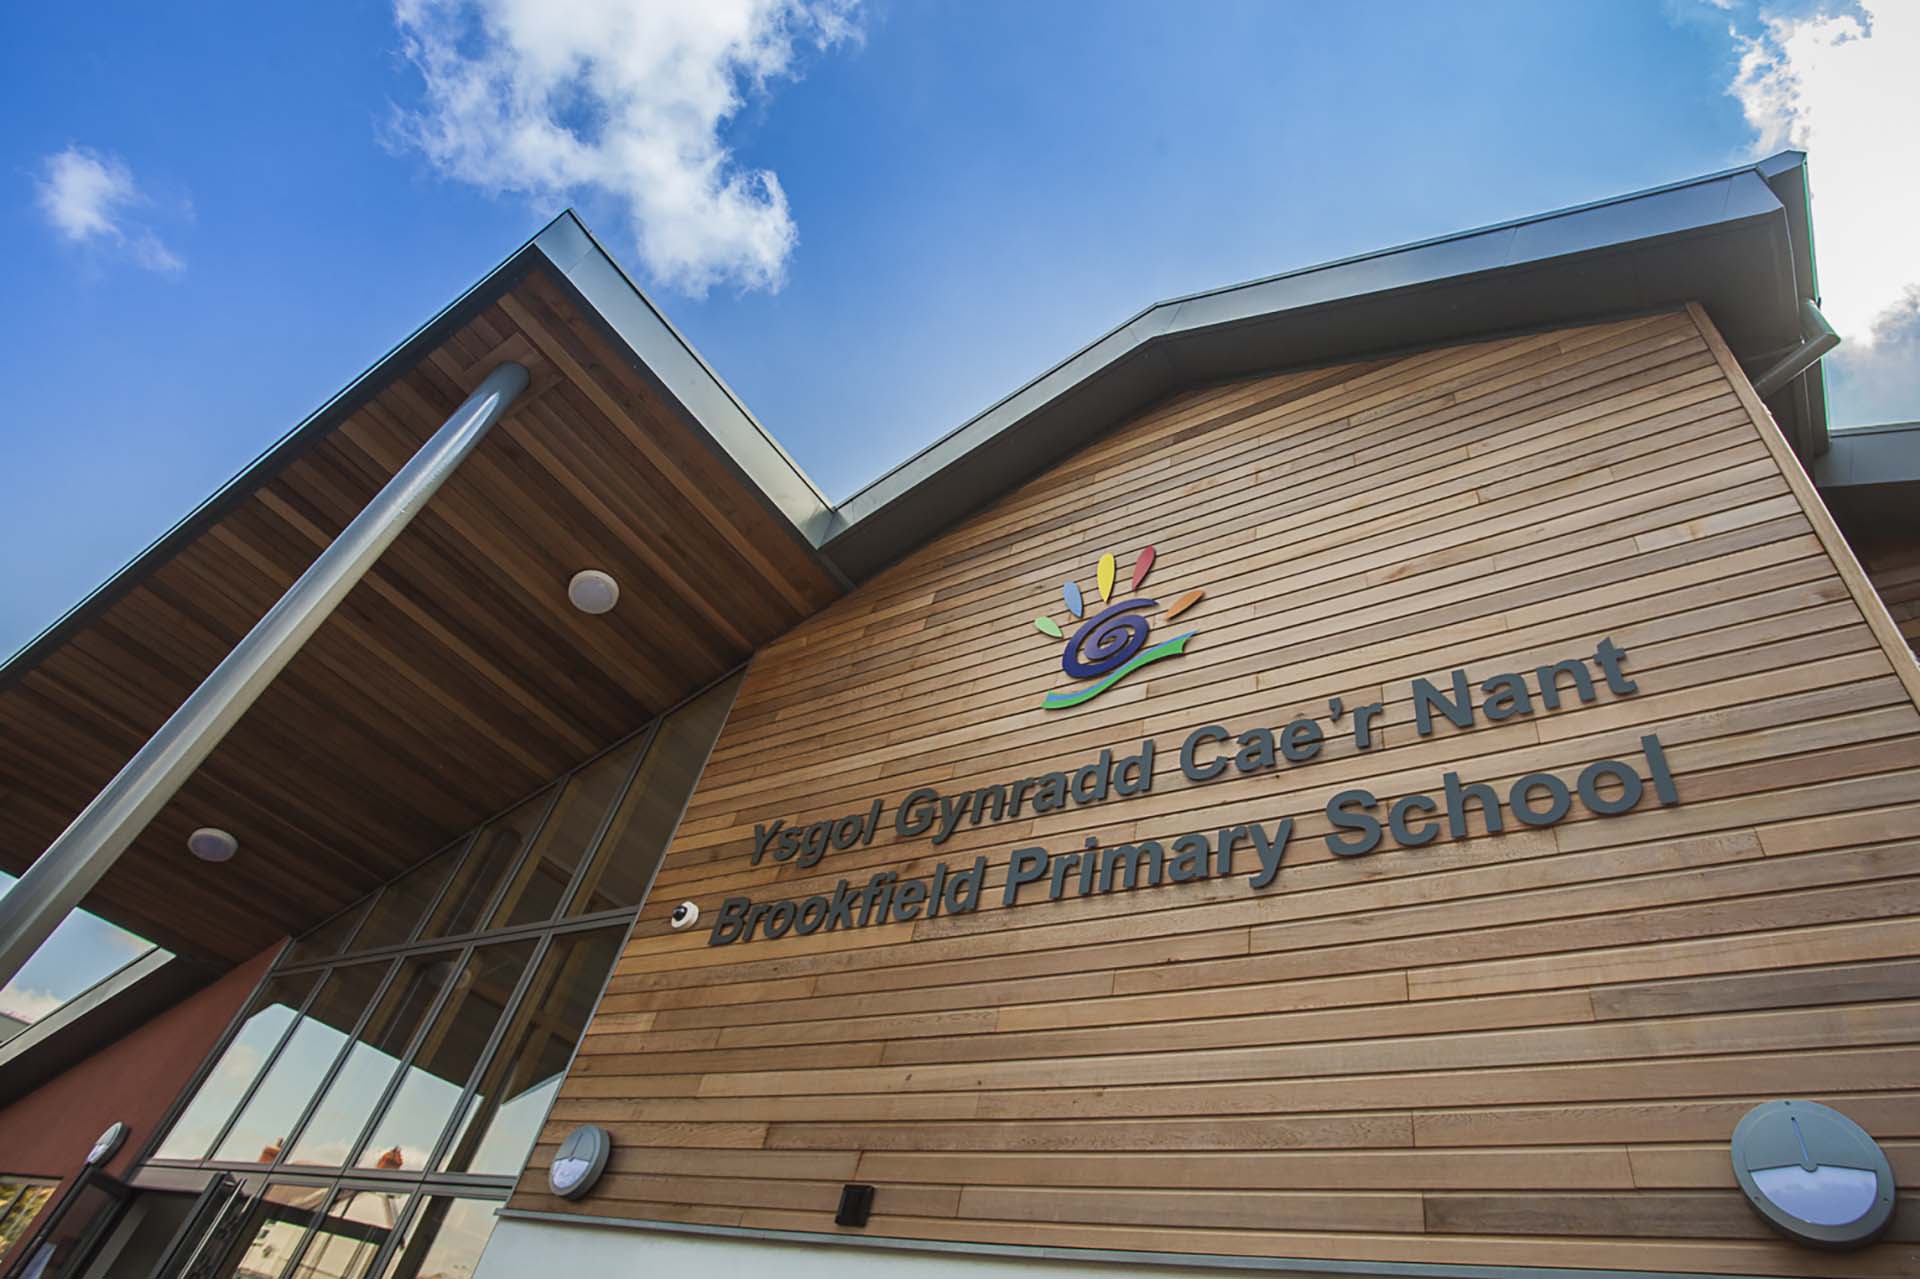 Chelsi Ormerod – Ysgol Cae’r Nant Primary School (Connah’s Quay)